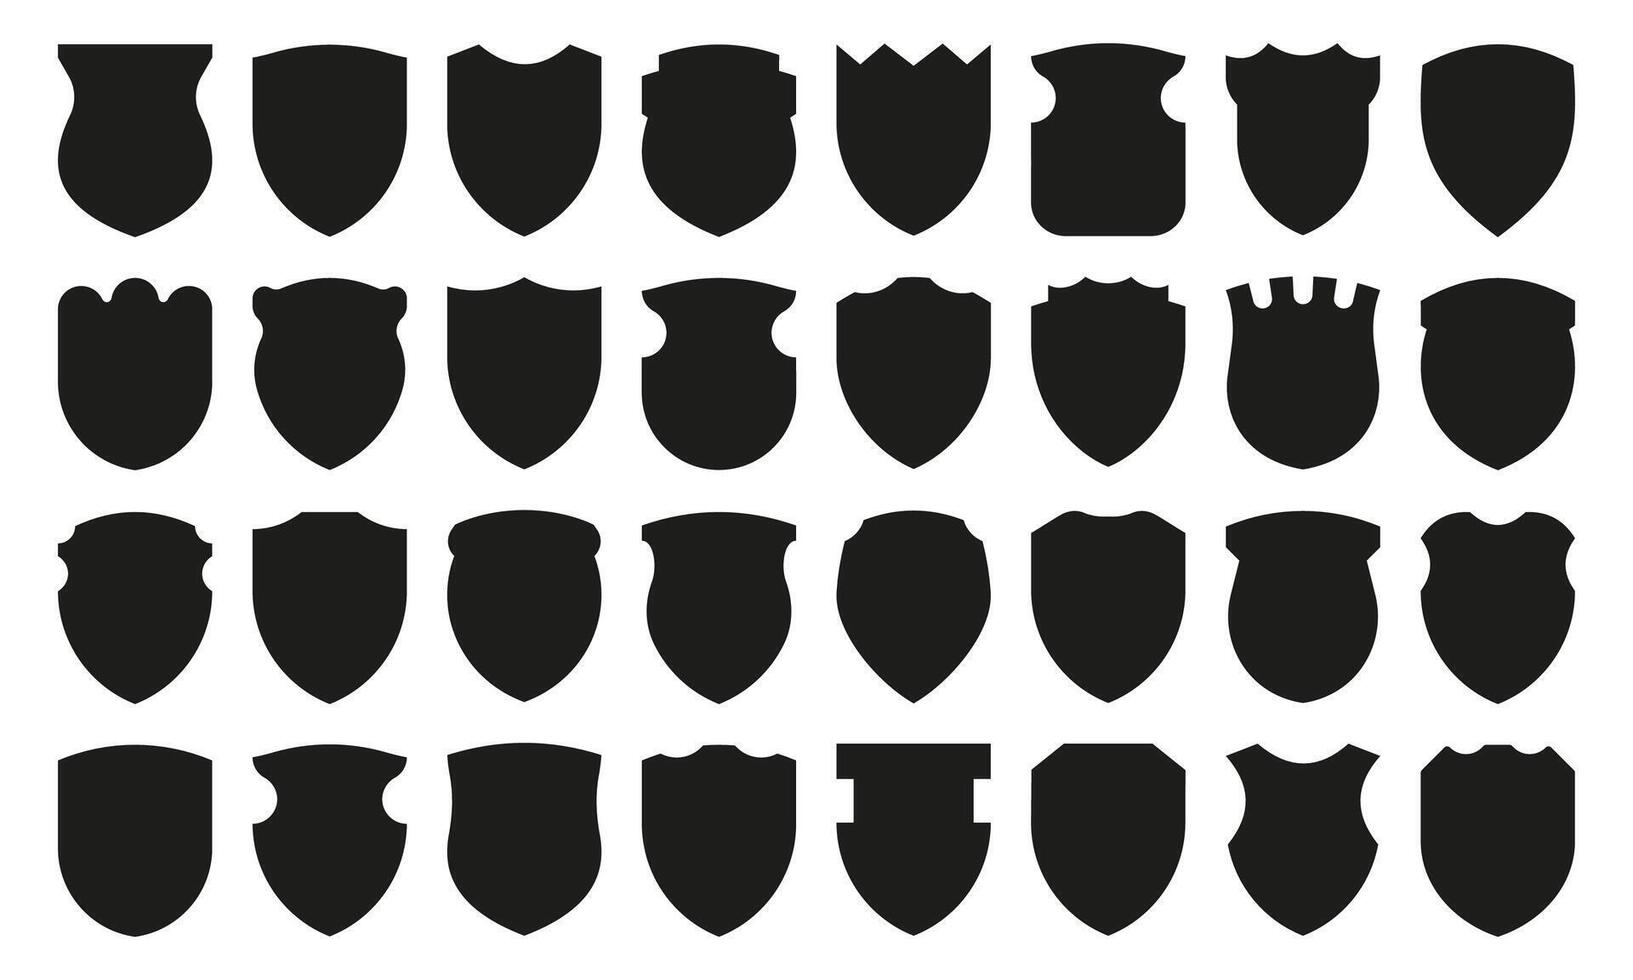 skydda silhuett ikoner. medeltida svart silhuetter av annorlunda former, säkerhet och auktoritet heraldisk symbol, tom skydd märka. vektor isolerat uppsättning